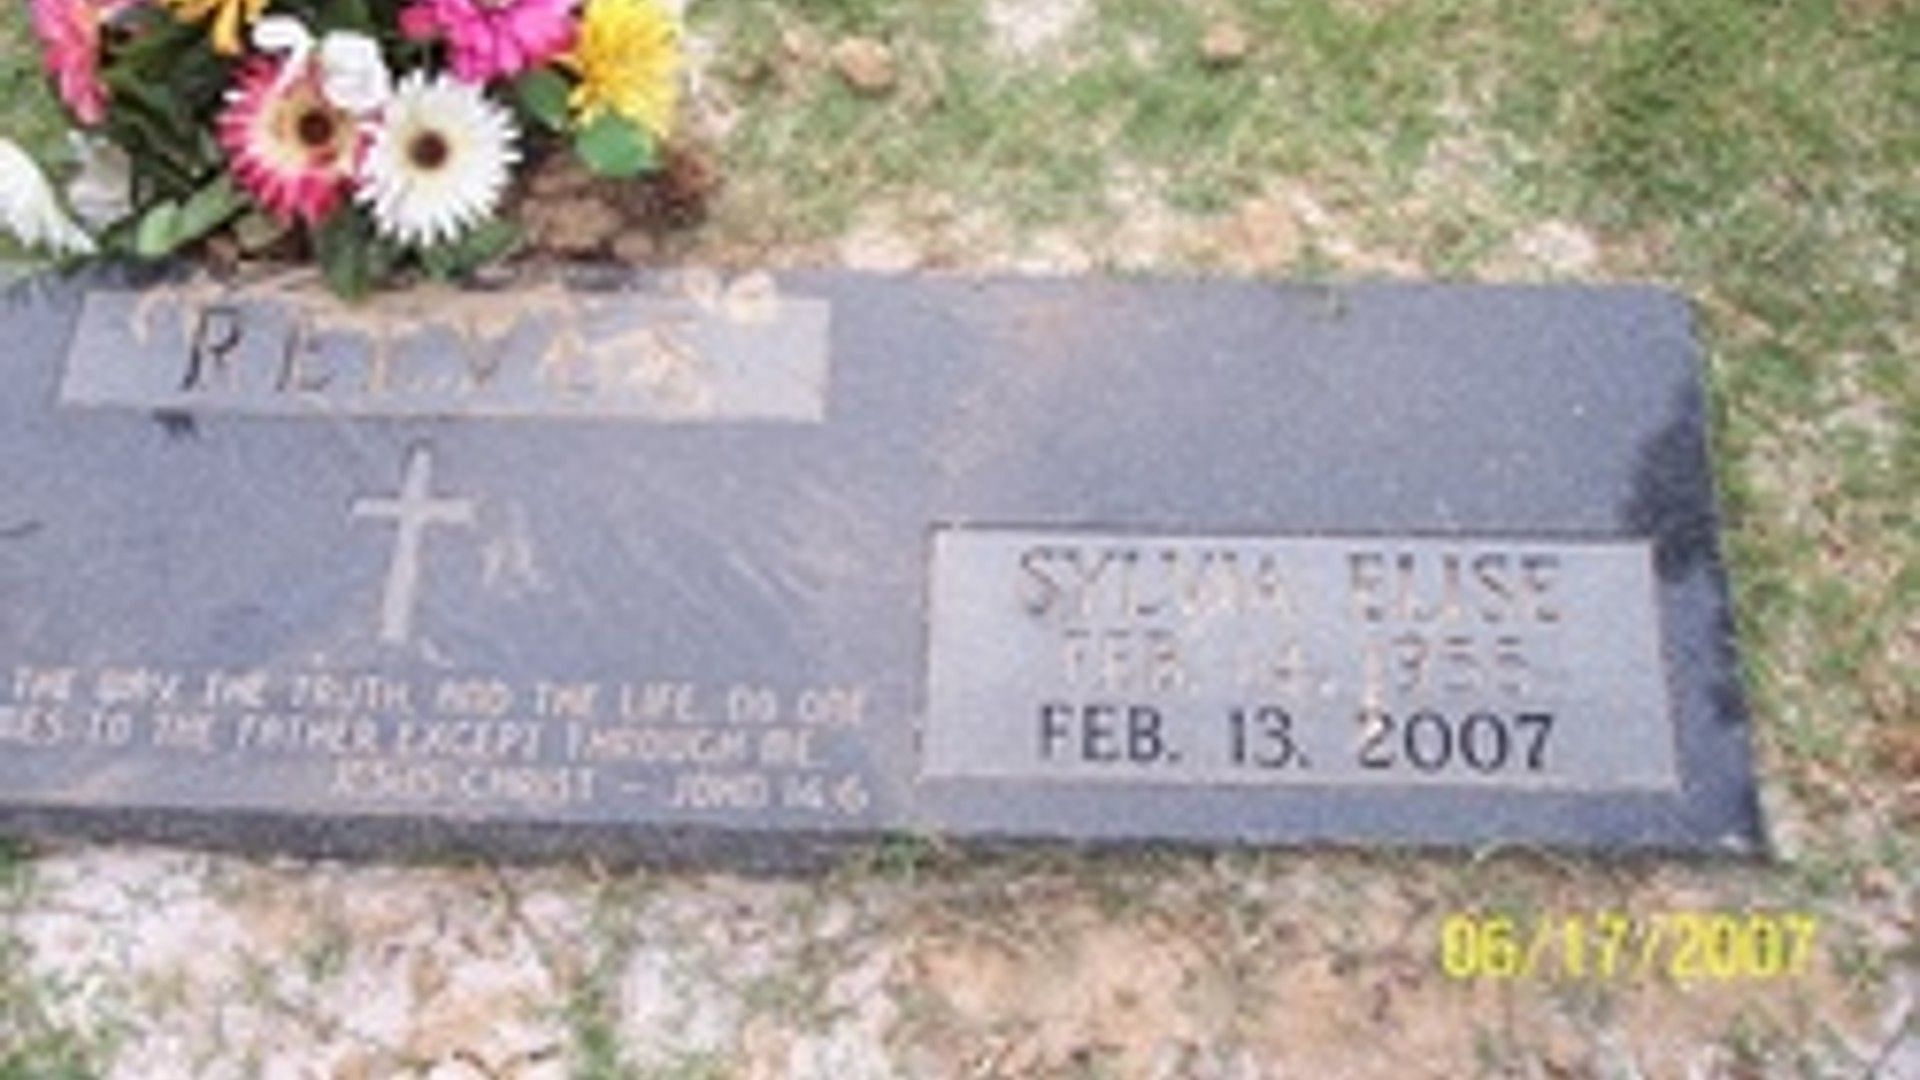 Sylvia Elise&#039;s grave (Image via Find a Grave)